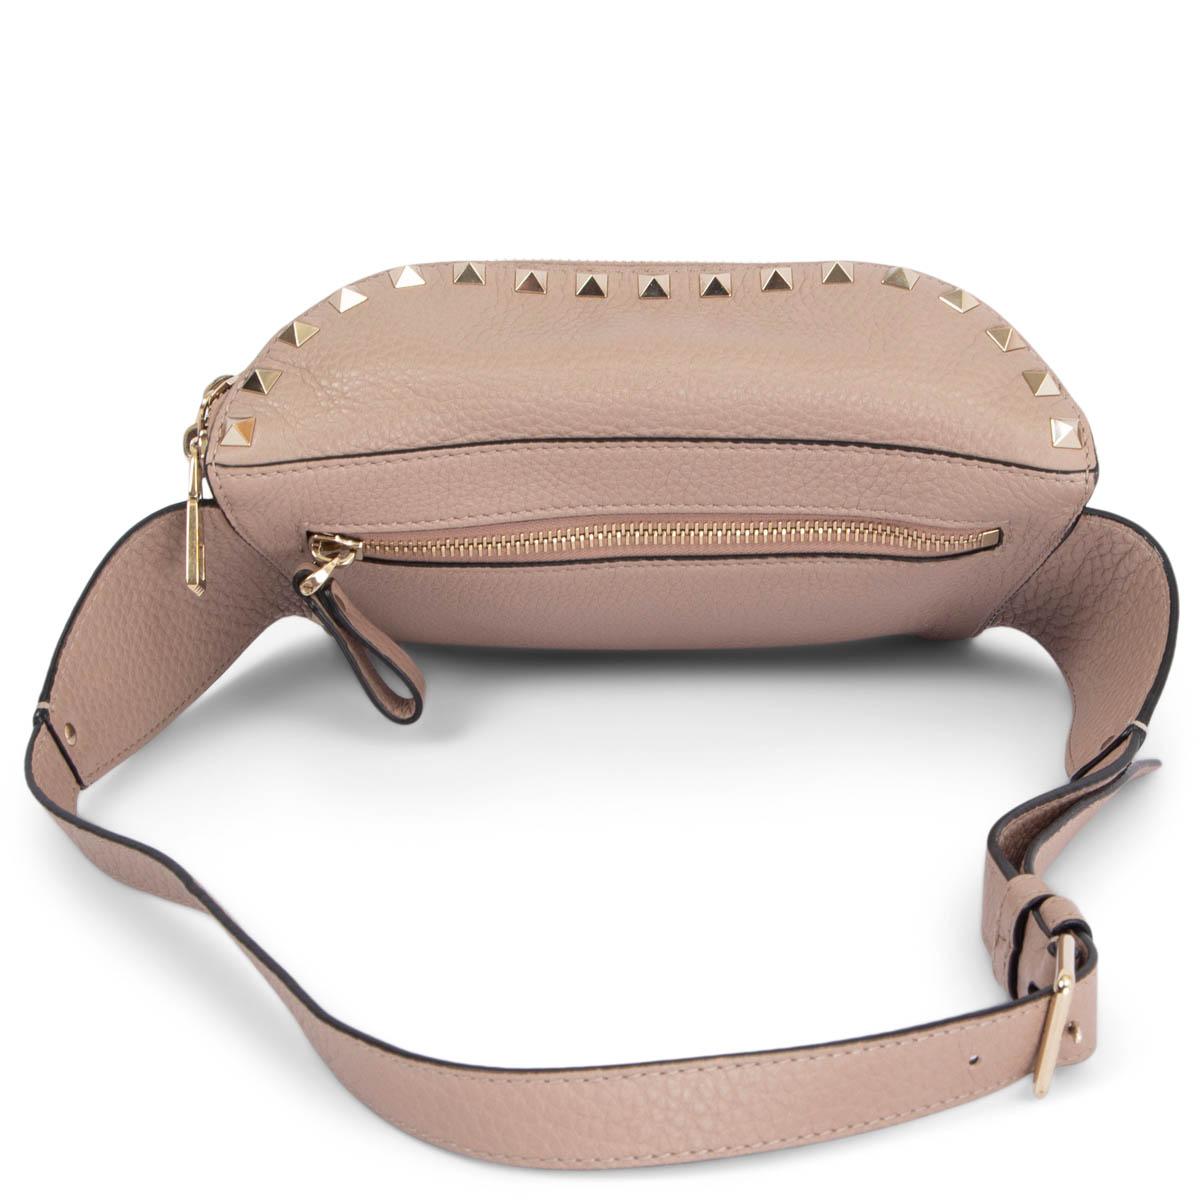 Beige VALENTINO nude pink leather ROCKSTUD Belt Bag